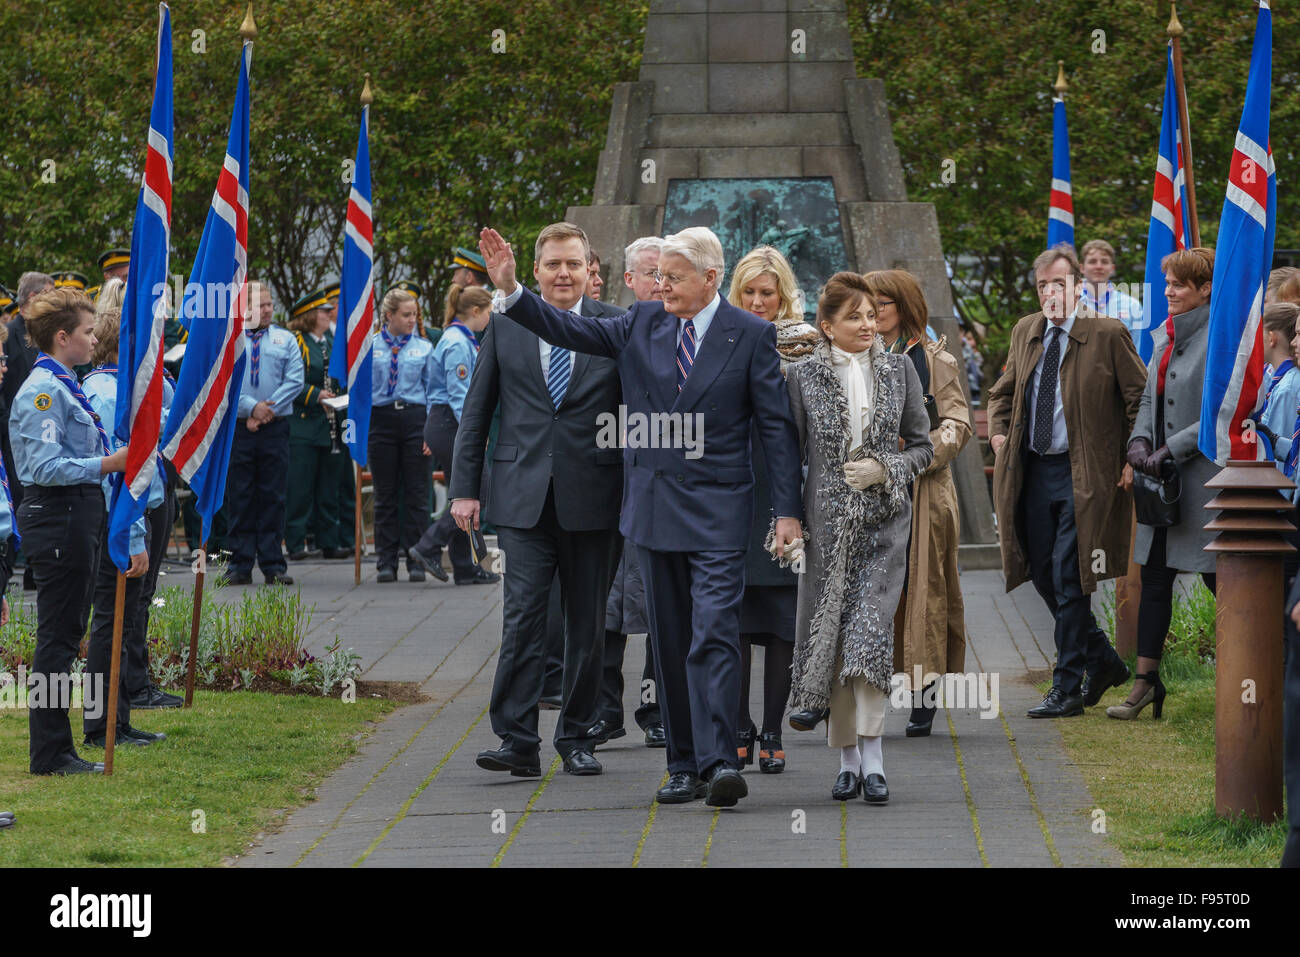 Olafur Ragnar Grimsson (Président) et Dorrit Chevaleraud (Première Dame), et le premier ministre, le jour de l'indépendance, l'Islande, 2015 Banque D'Images